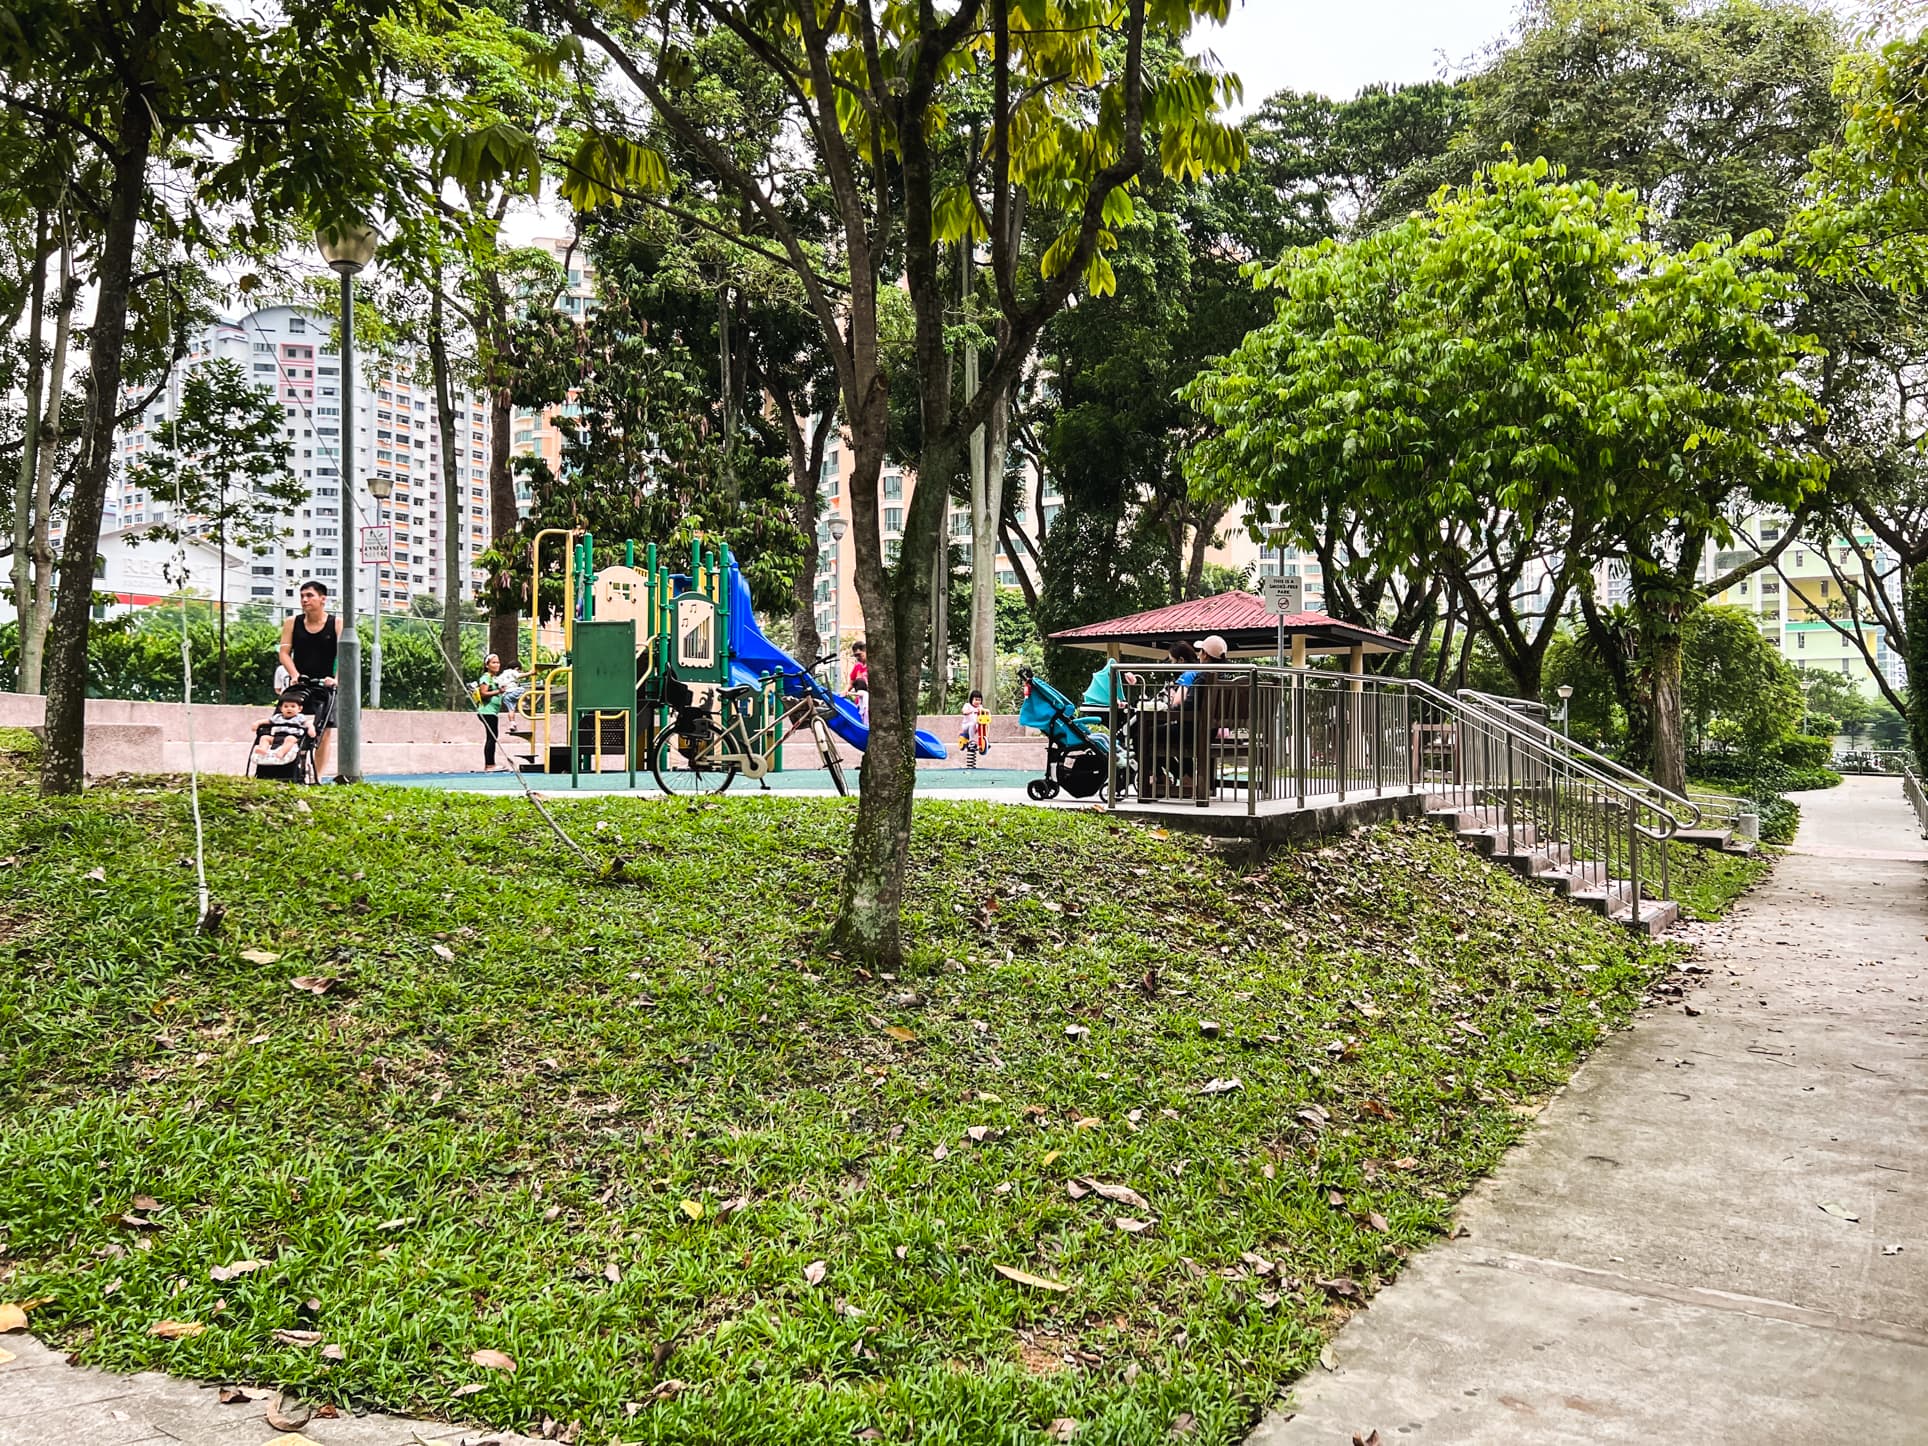 villa verde playground